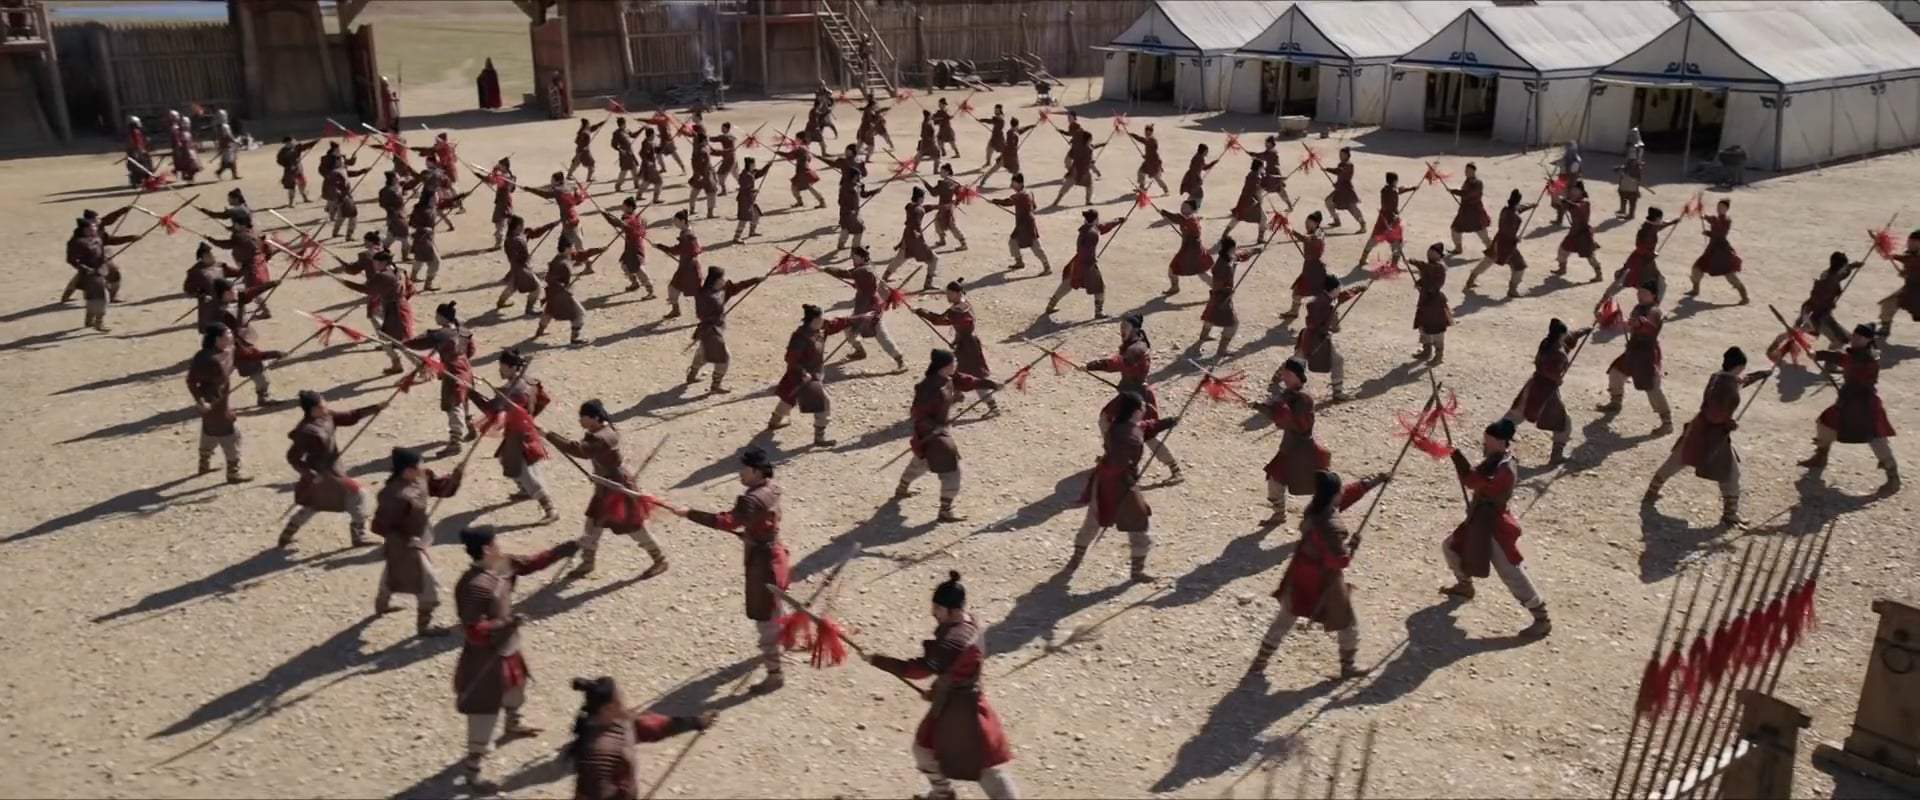 Mulan TV Spot - Battle (2020)